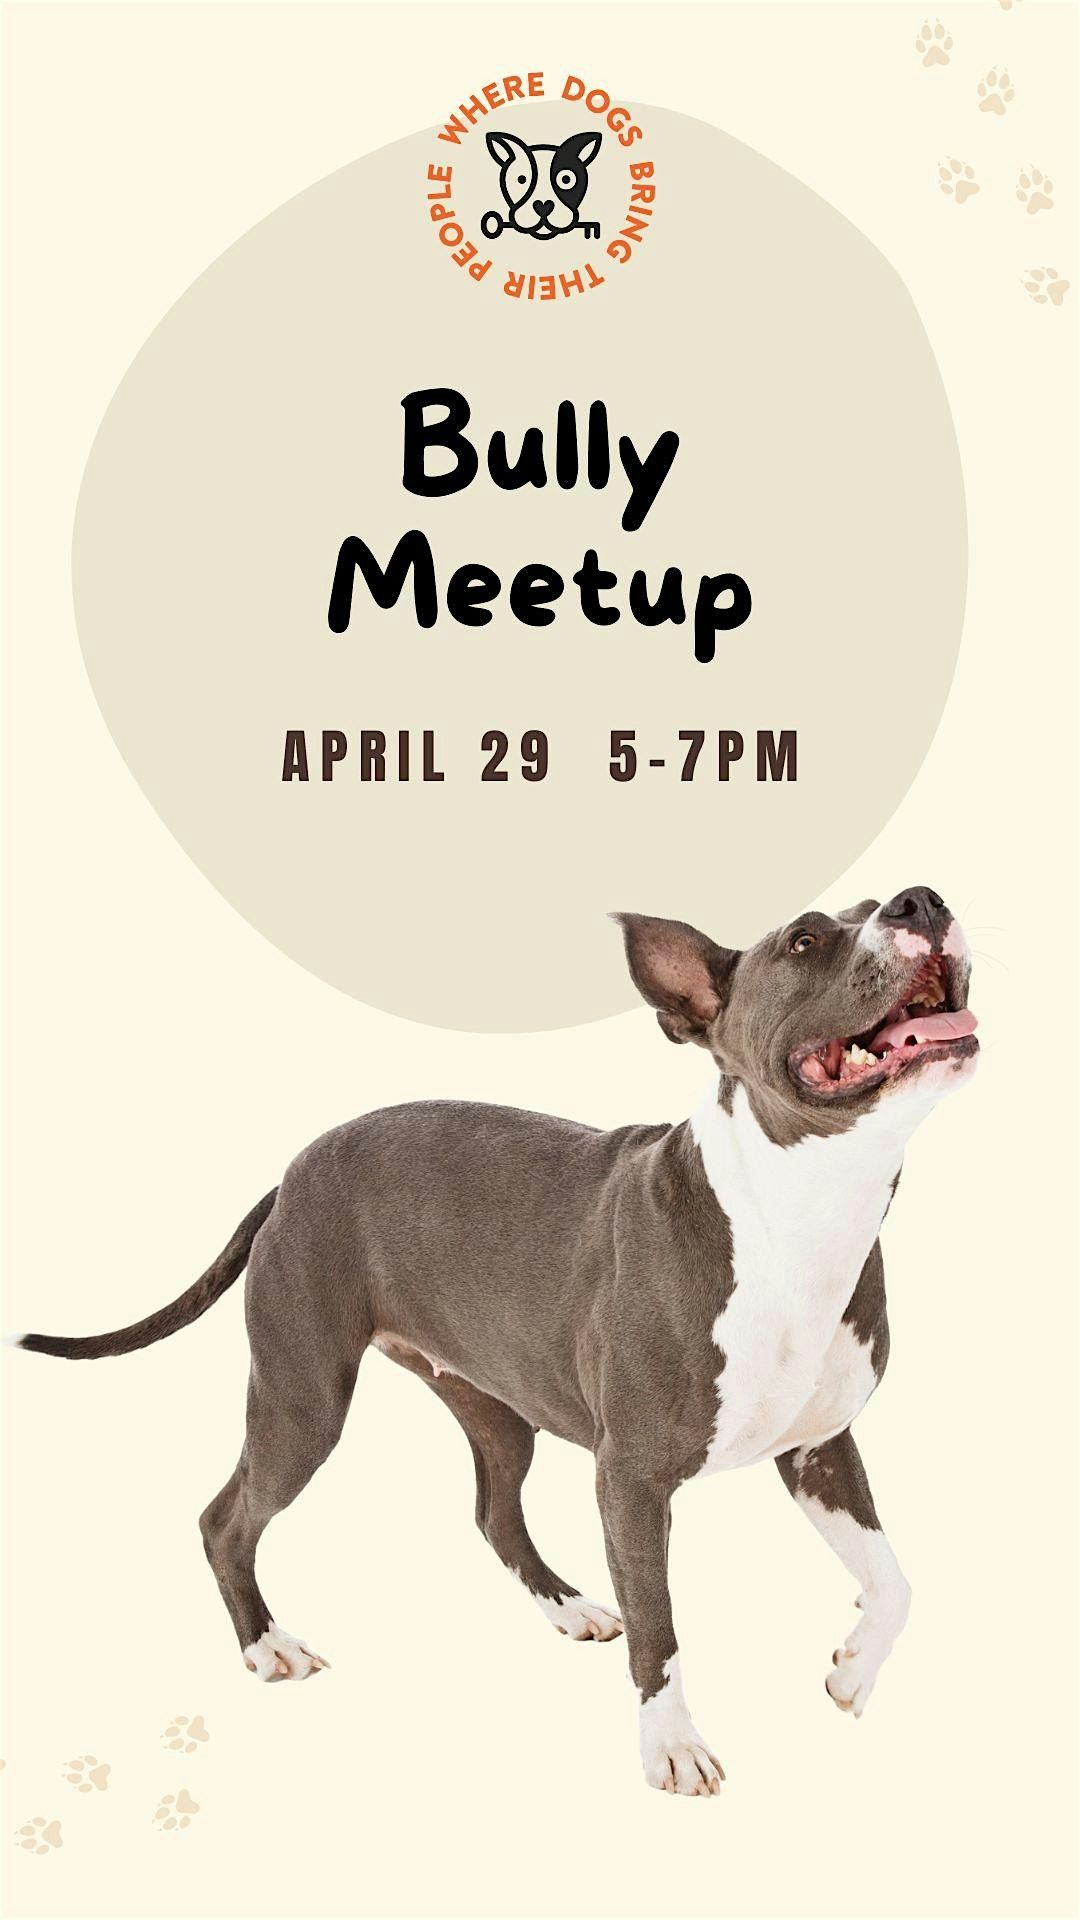 Bully Meetup at The Dog Society